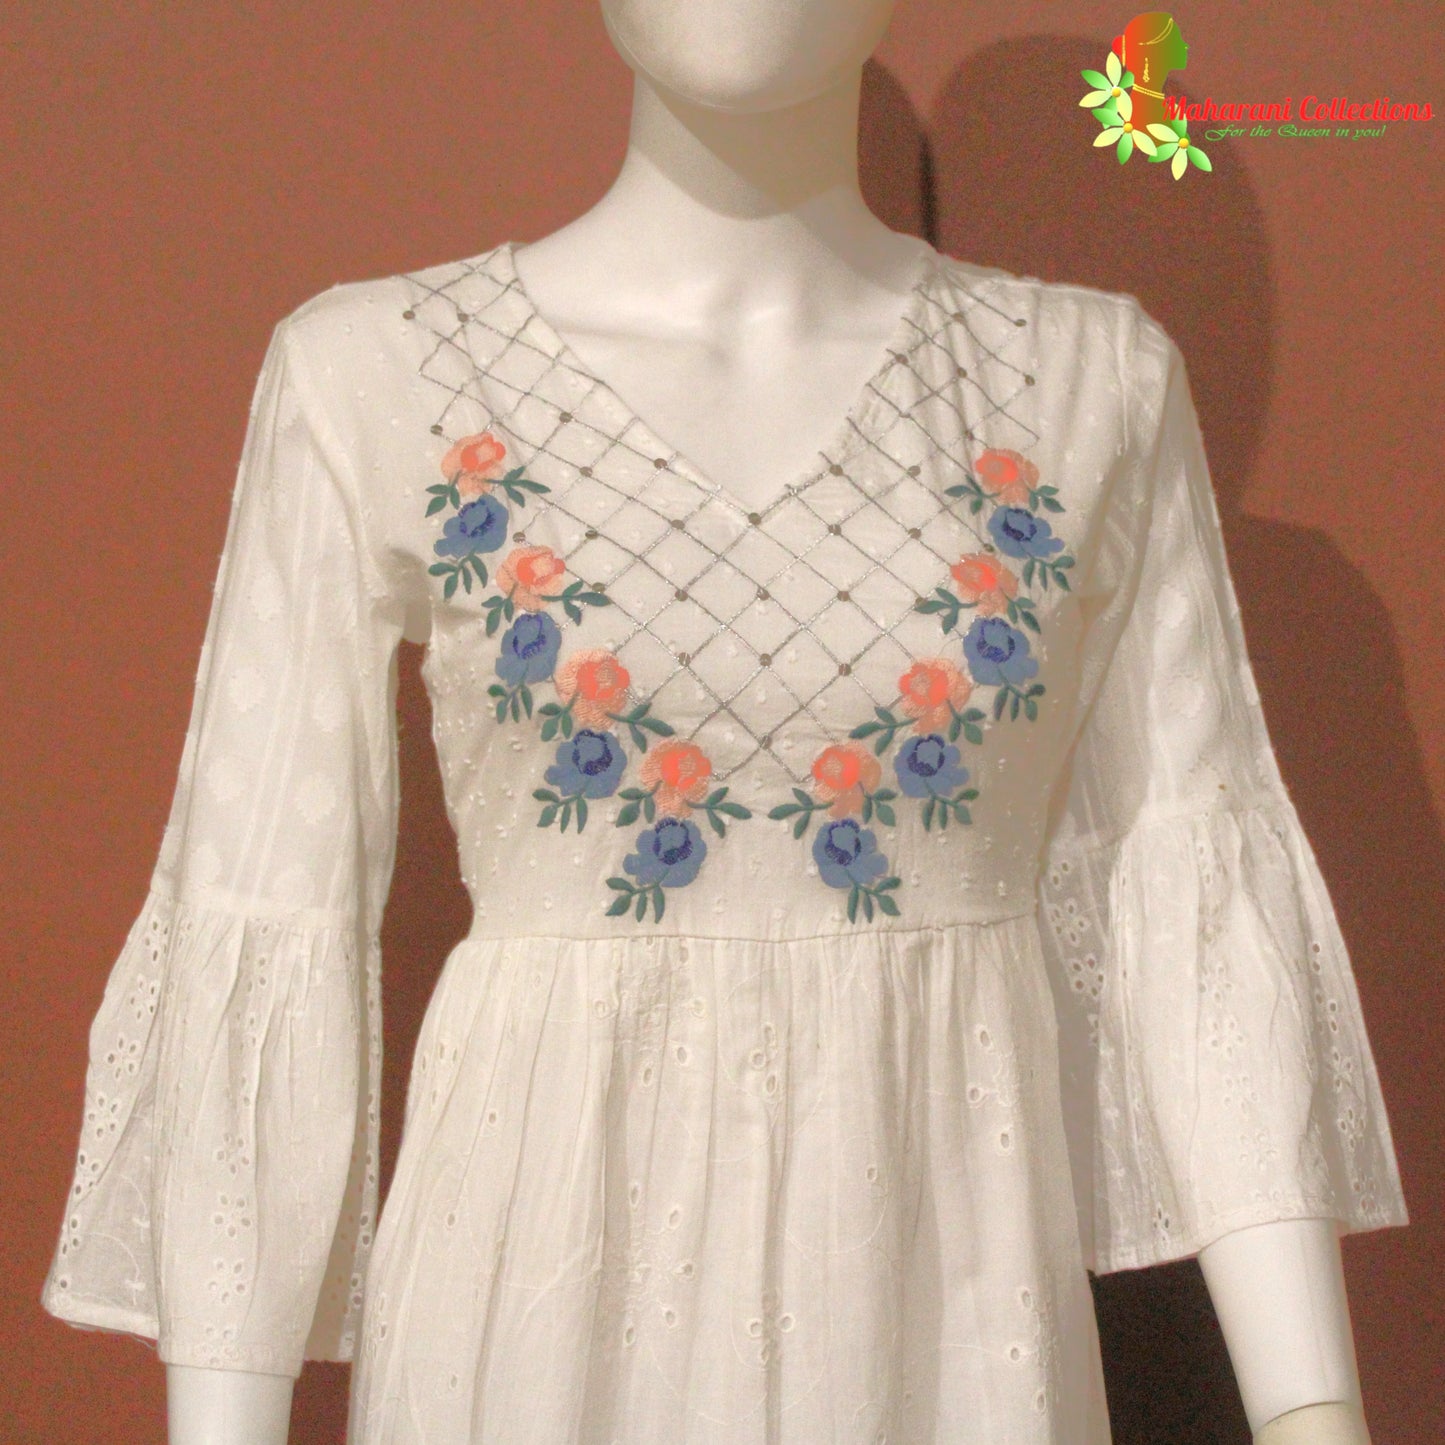 Maharani's Short Dress - Pure Cotton - White (XS, S, M)